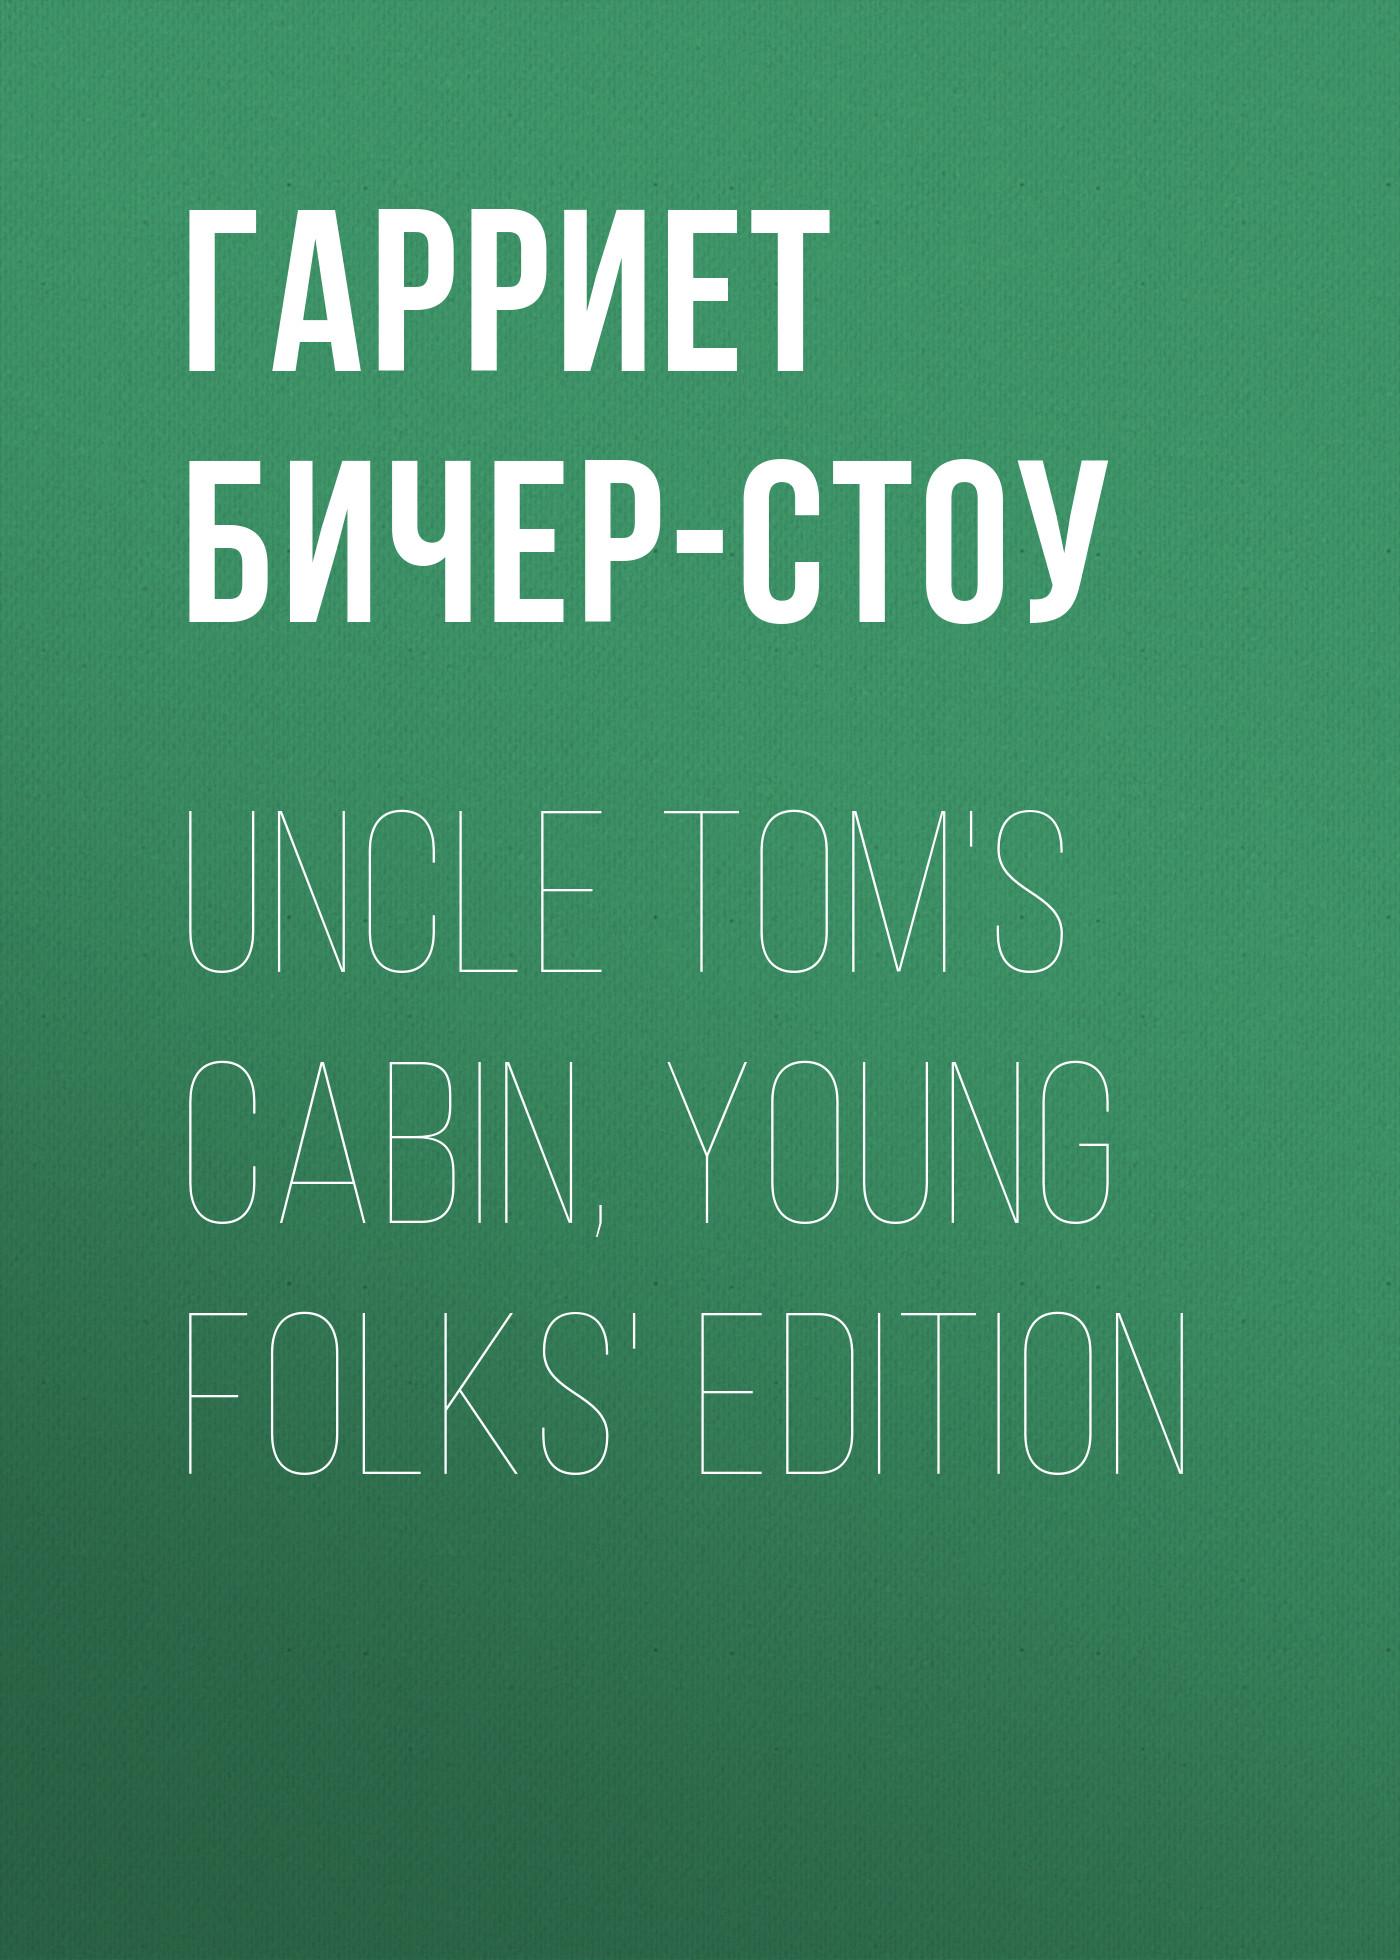 Книга Uncle Tom's Cabin, Young Folks' Edition из серии , созданная Гарриет Бичер-Стоу, может относится к жанру Зарубежные детские книги, Литература 19 века, Зарубежная старинная литература, Зарубежная классика. Стоимость электронной книги Uncle Tom's Cabin, Young Folks' Edition с идентификатором 36320476 составляет 0 руб.